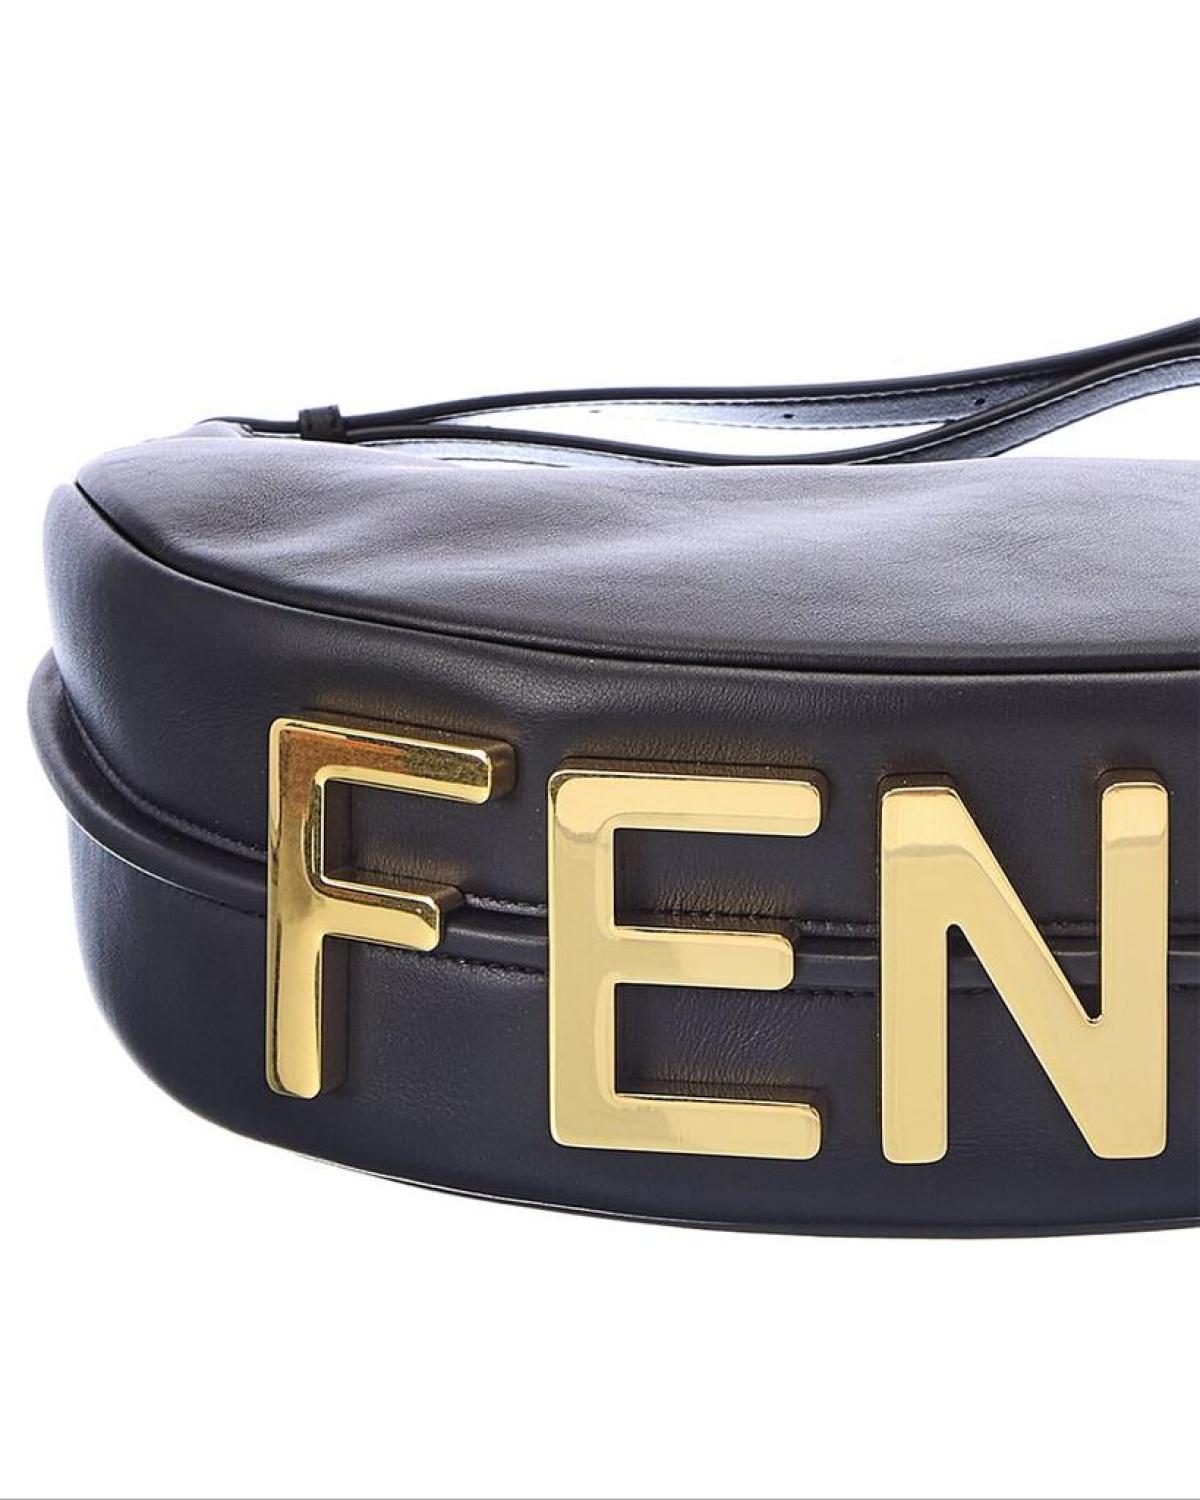 FENDI Fendigraphy Small Leather Hobo Bag